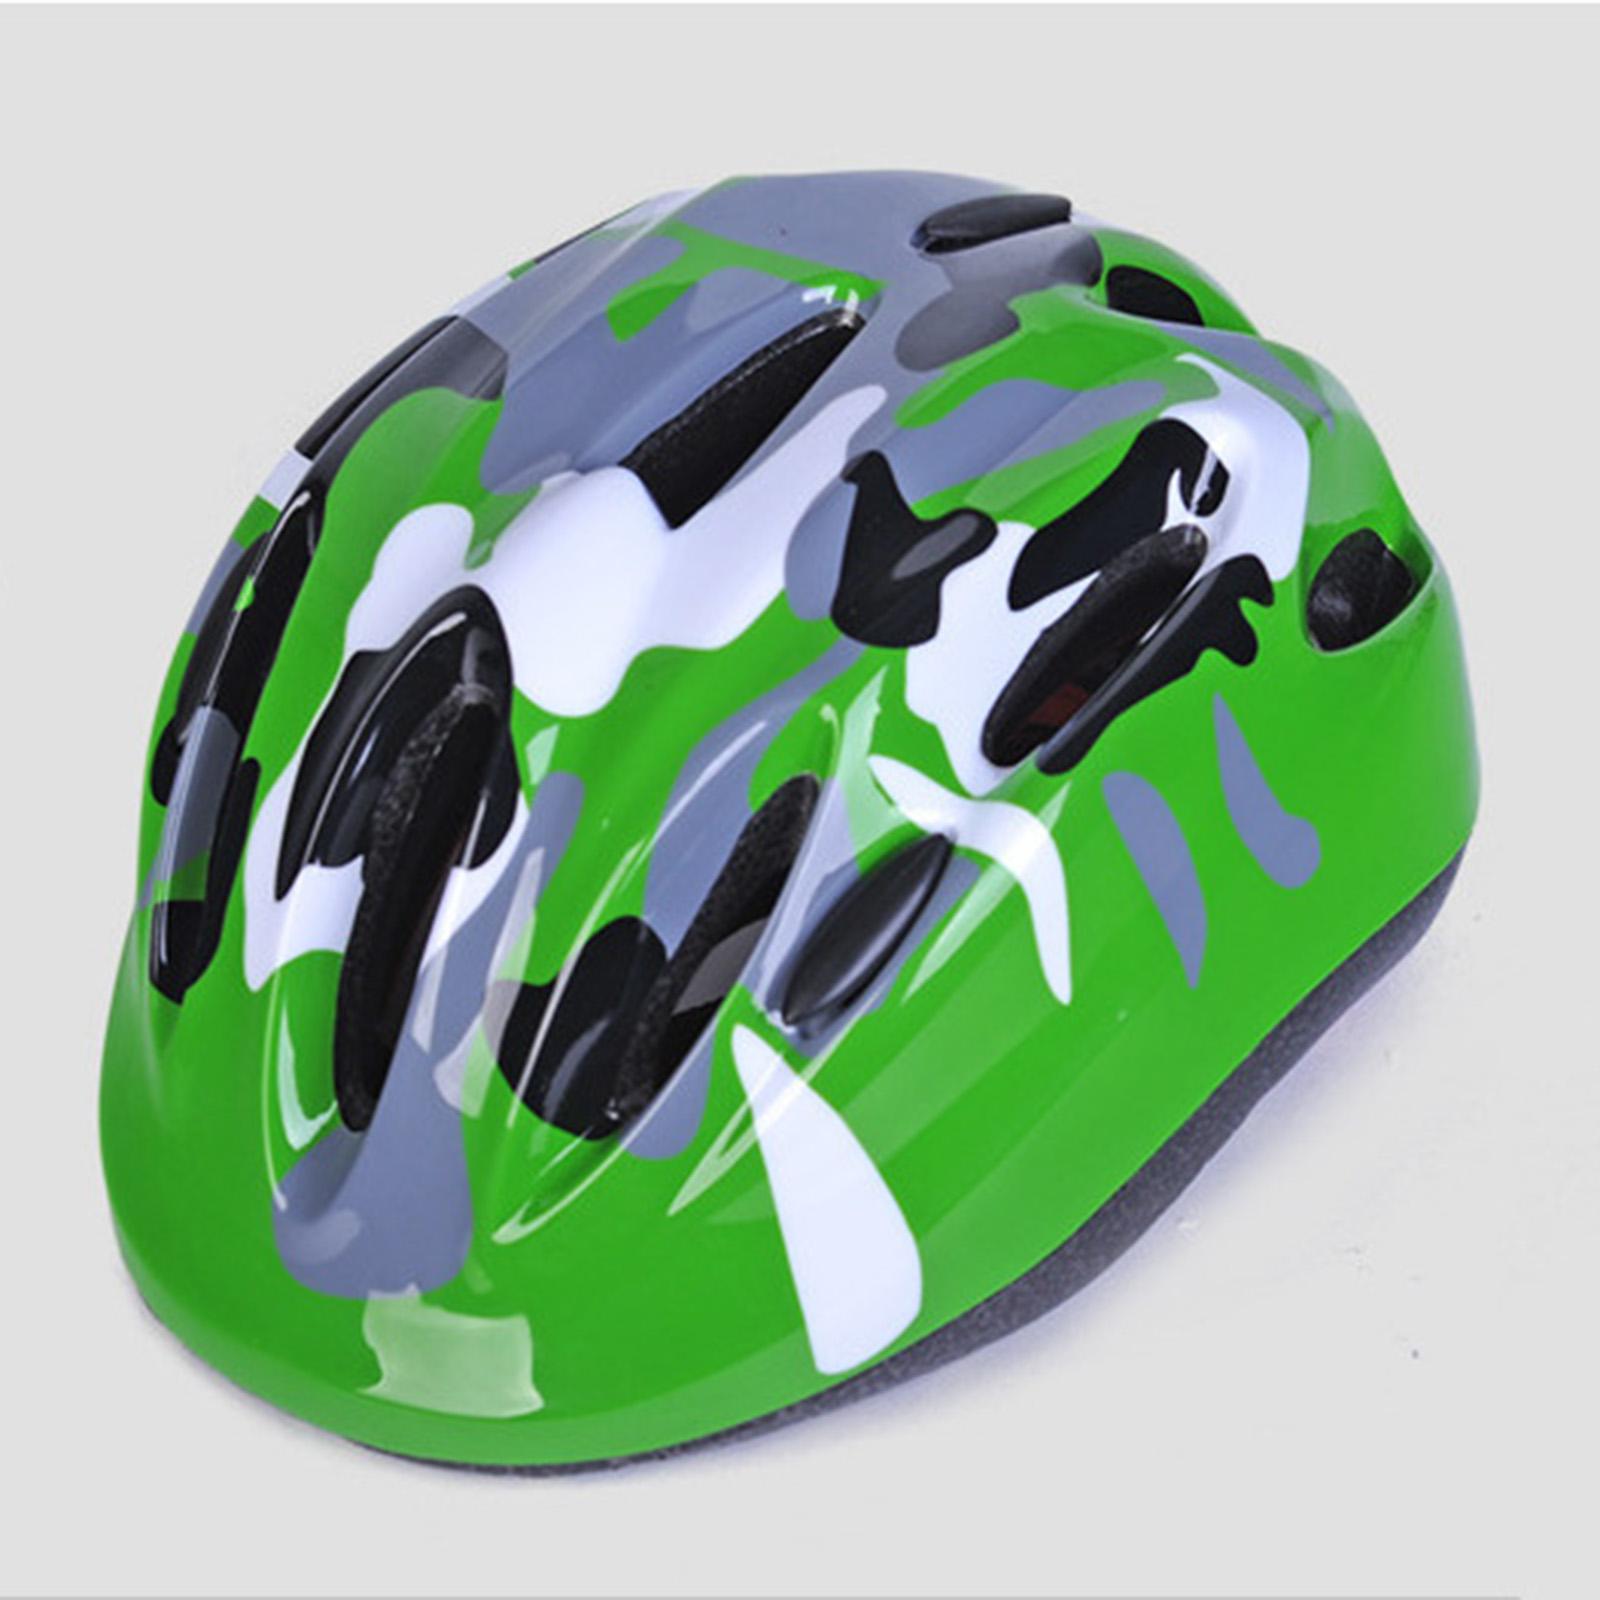 Kids Bike Helmet Cycling Helmet Skateboarding Helmet for Children Boys Girls Green